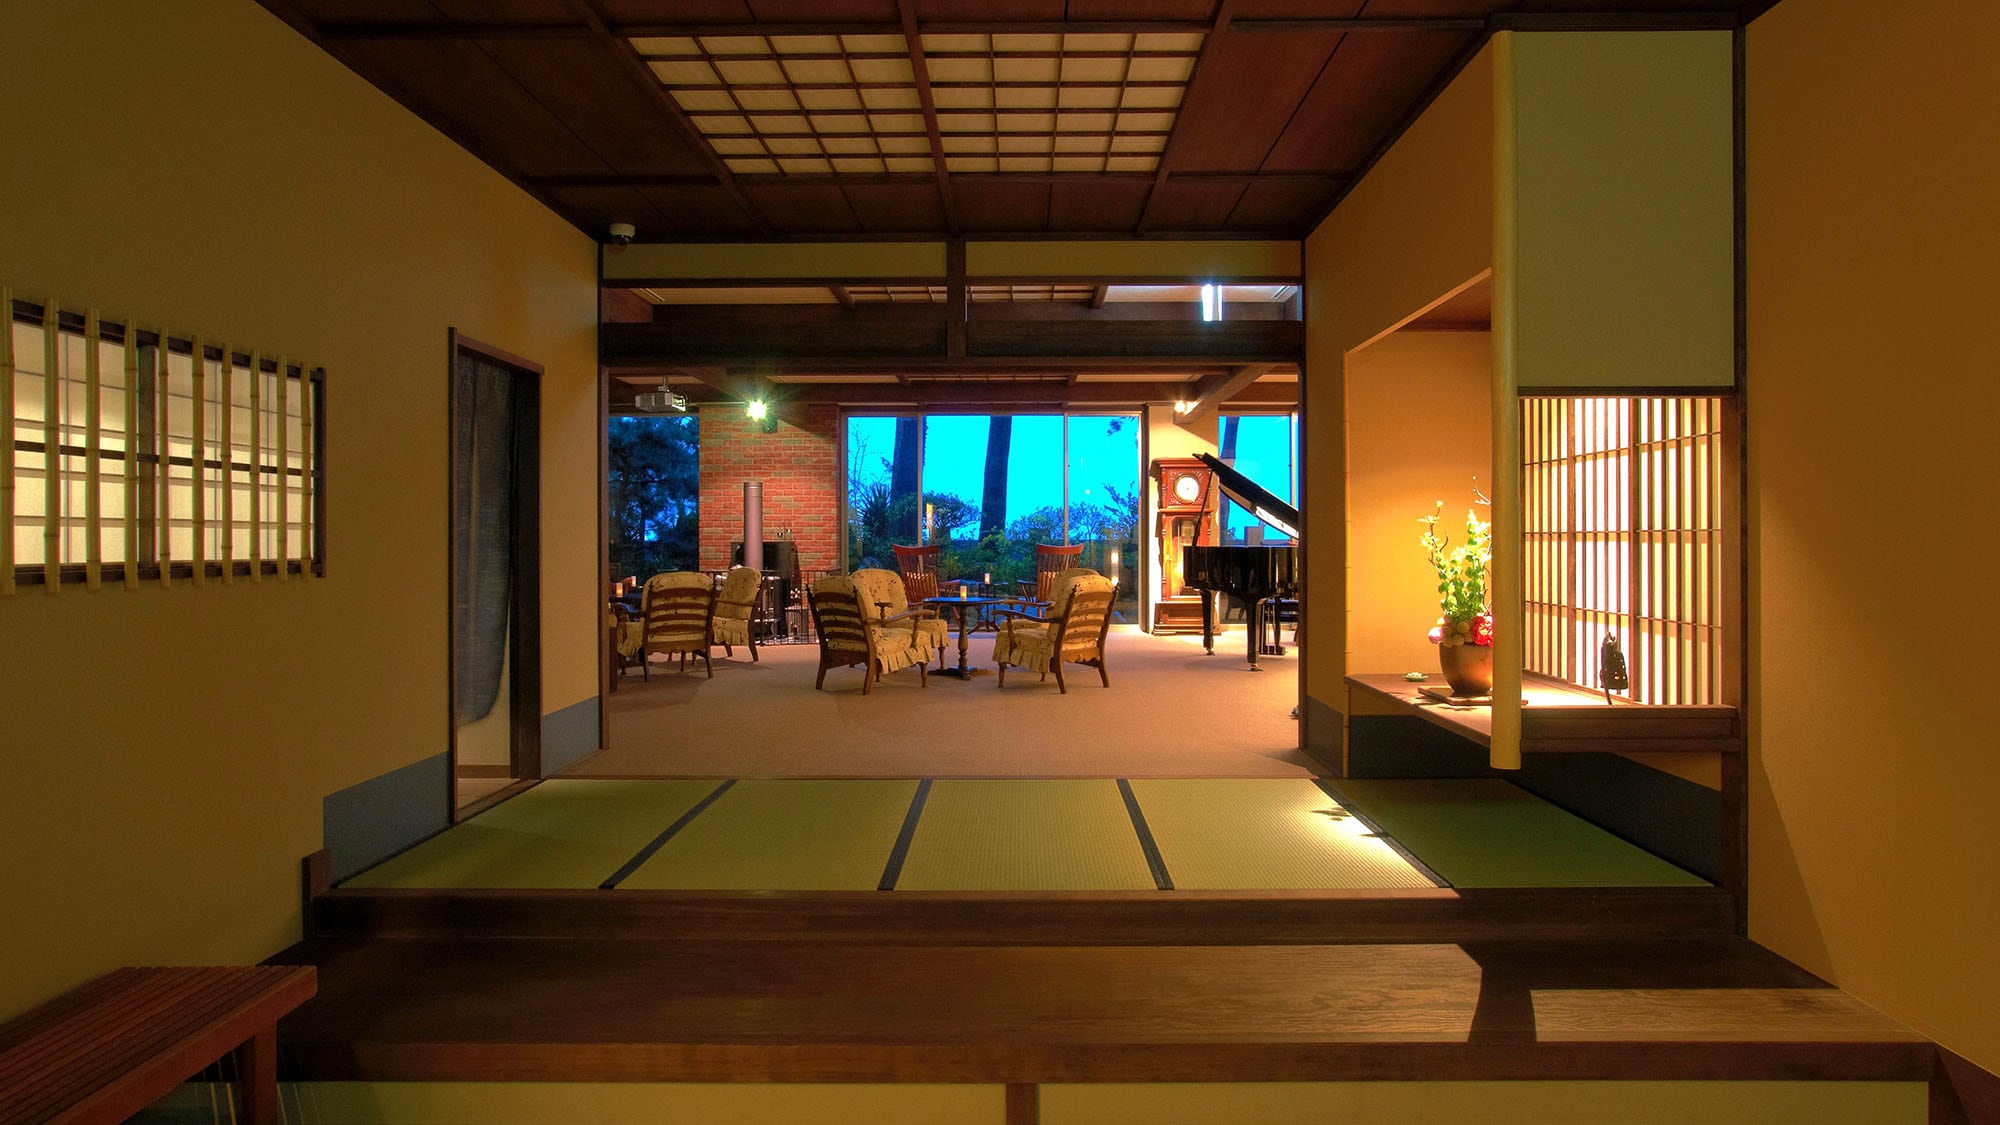 Pintu Masuk: Lobi yang mengarah ke pintu masuk bergaya Jepang murni memiliki interior bergaya Barat.